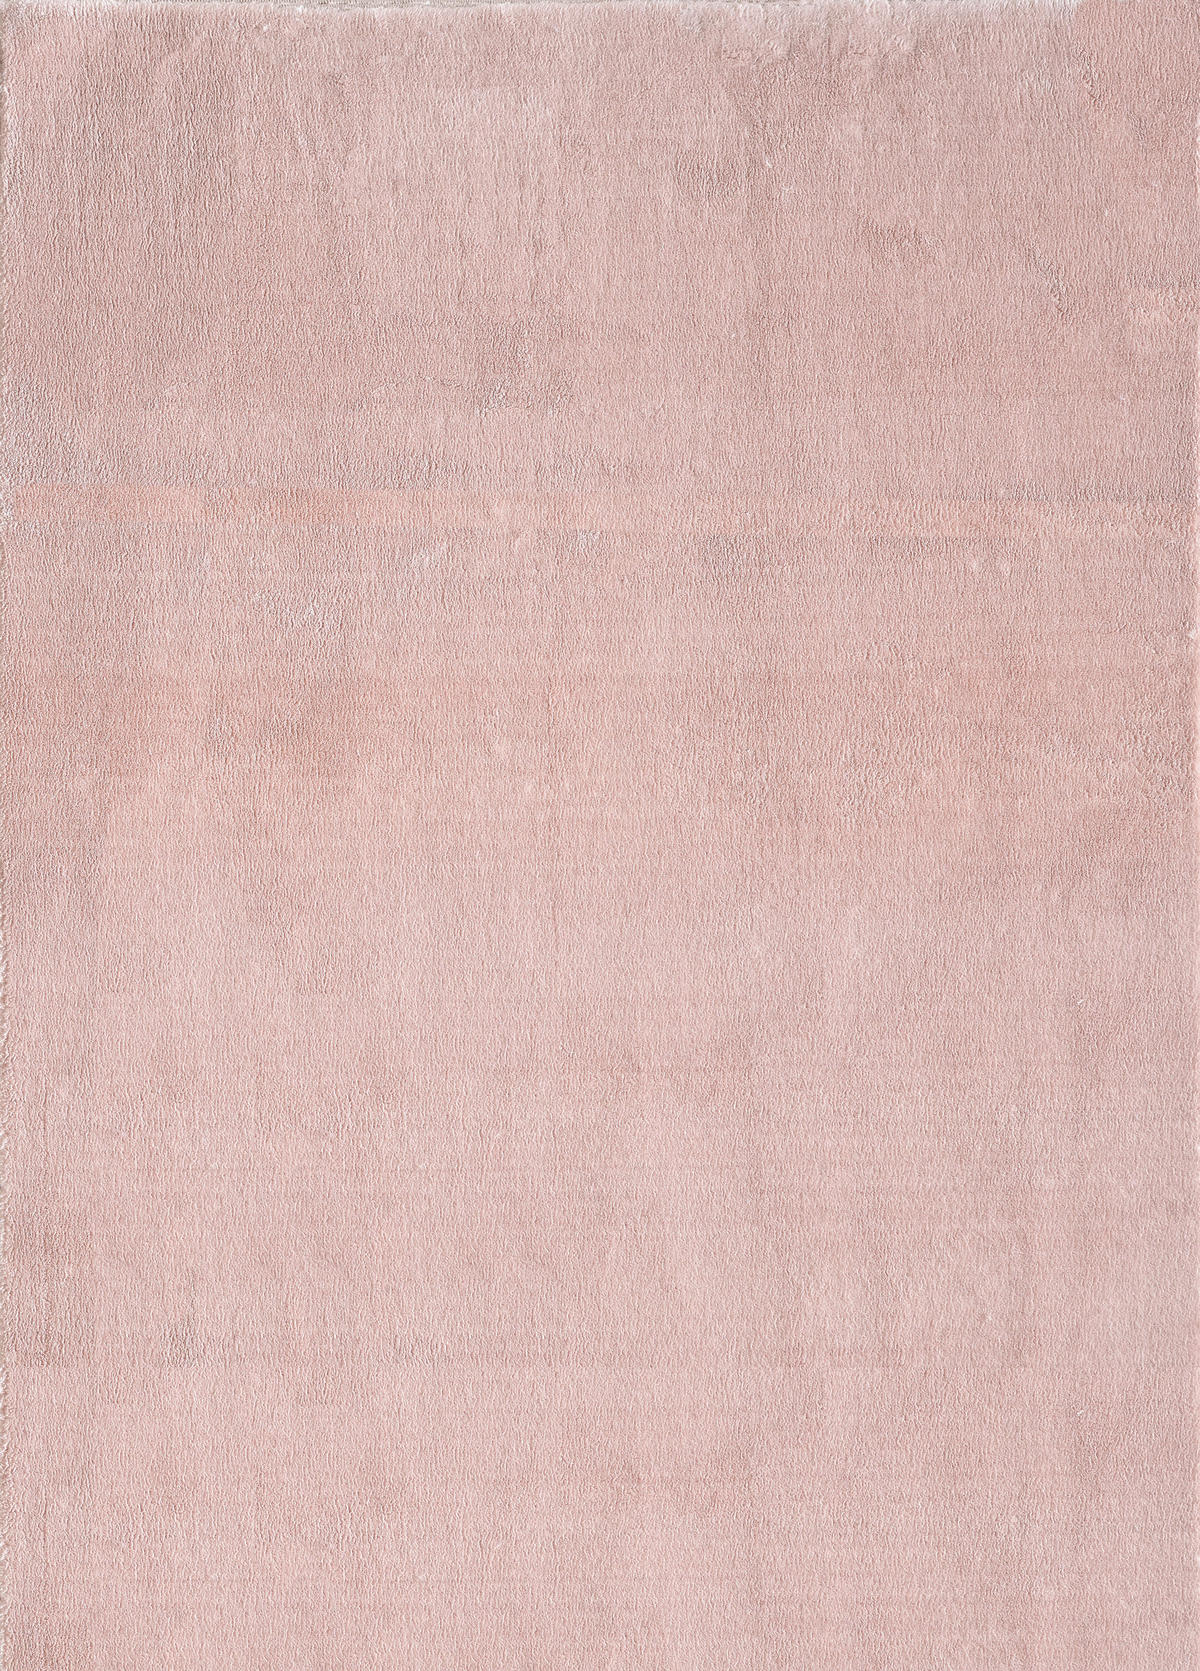 HOCHFLORTEPPICH 140/200 cm Catwalk  - Beige, Basics, Textil (140/200cm) - Novel